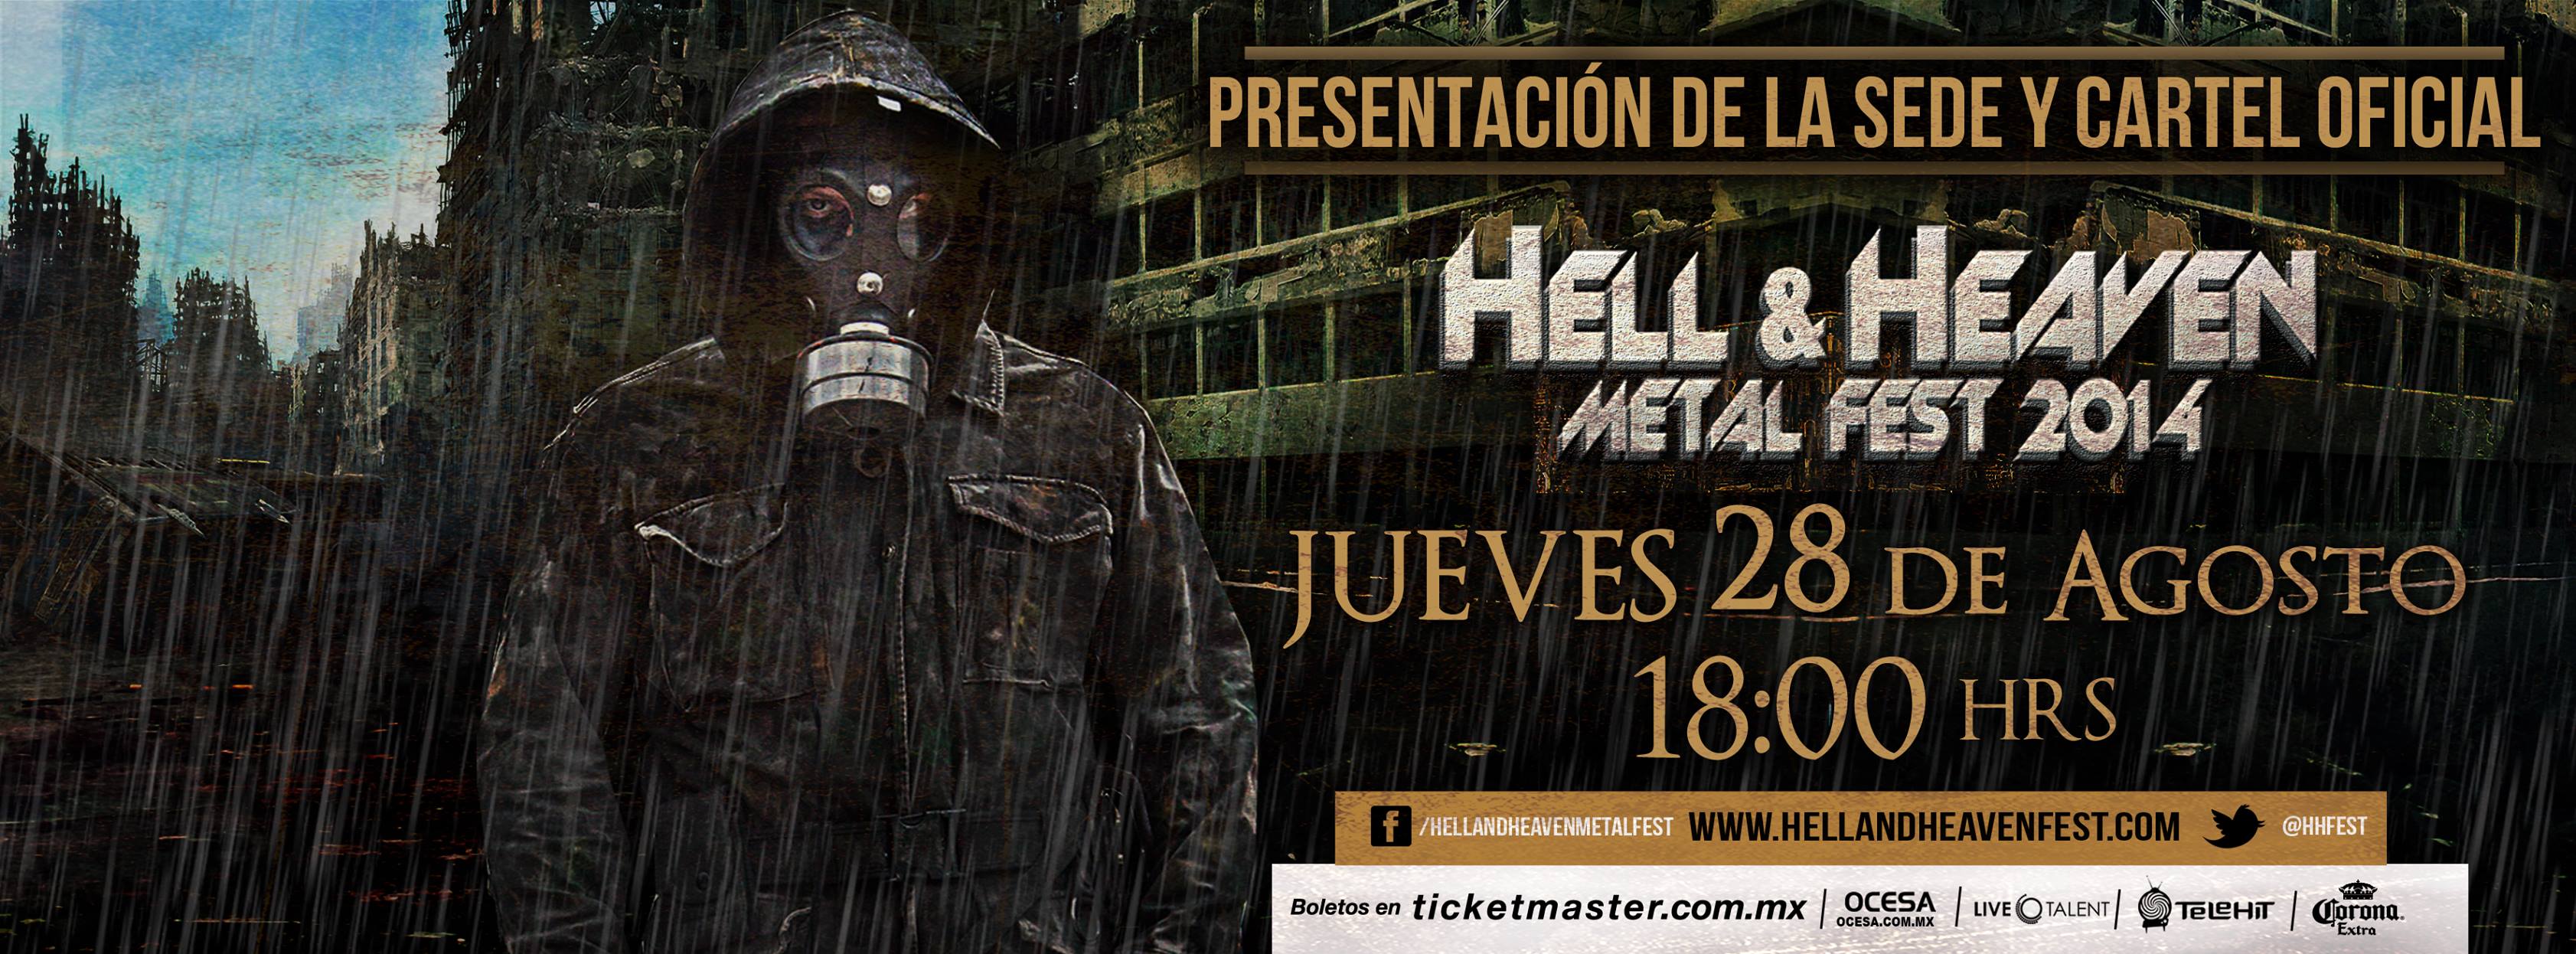 Hell&Heaven anuncio sede y cartel